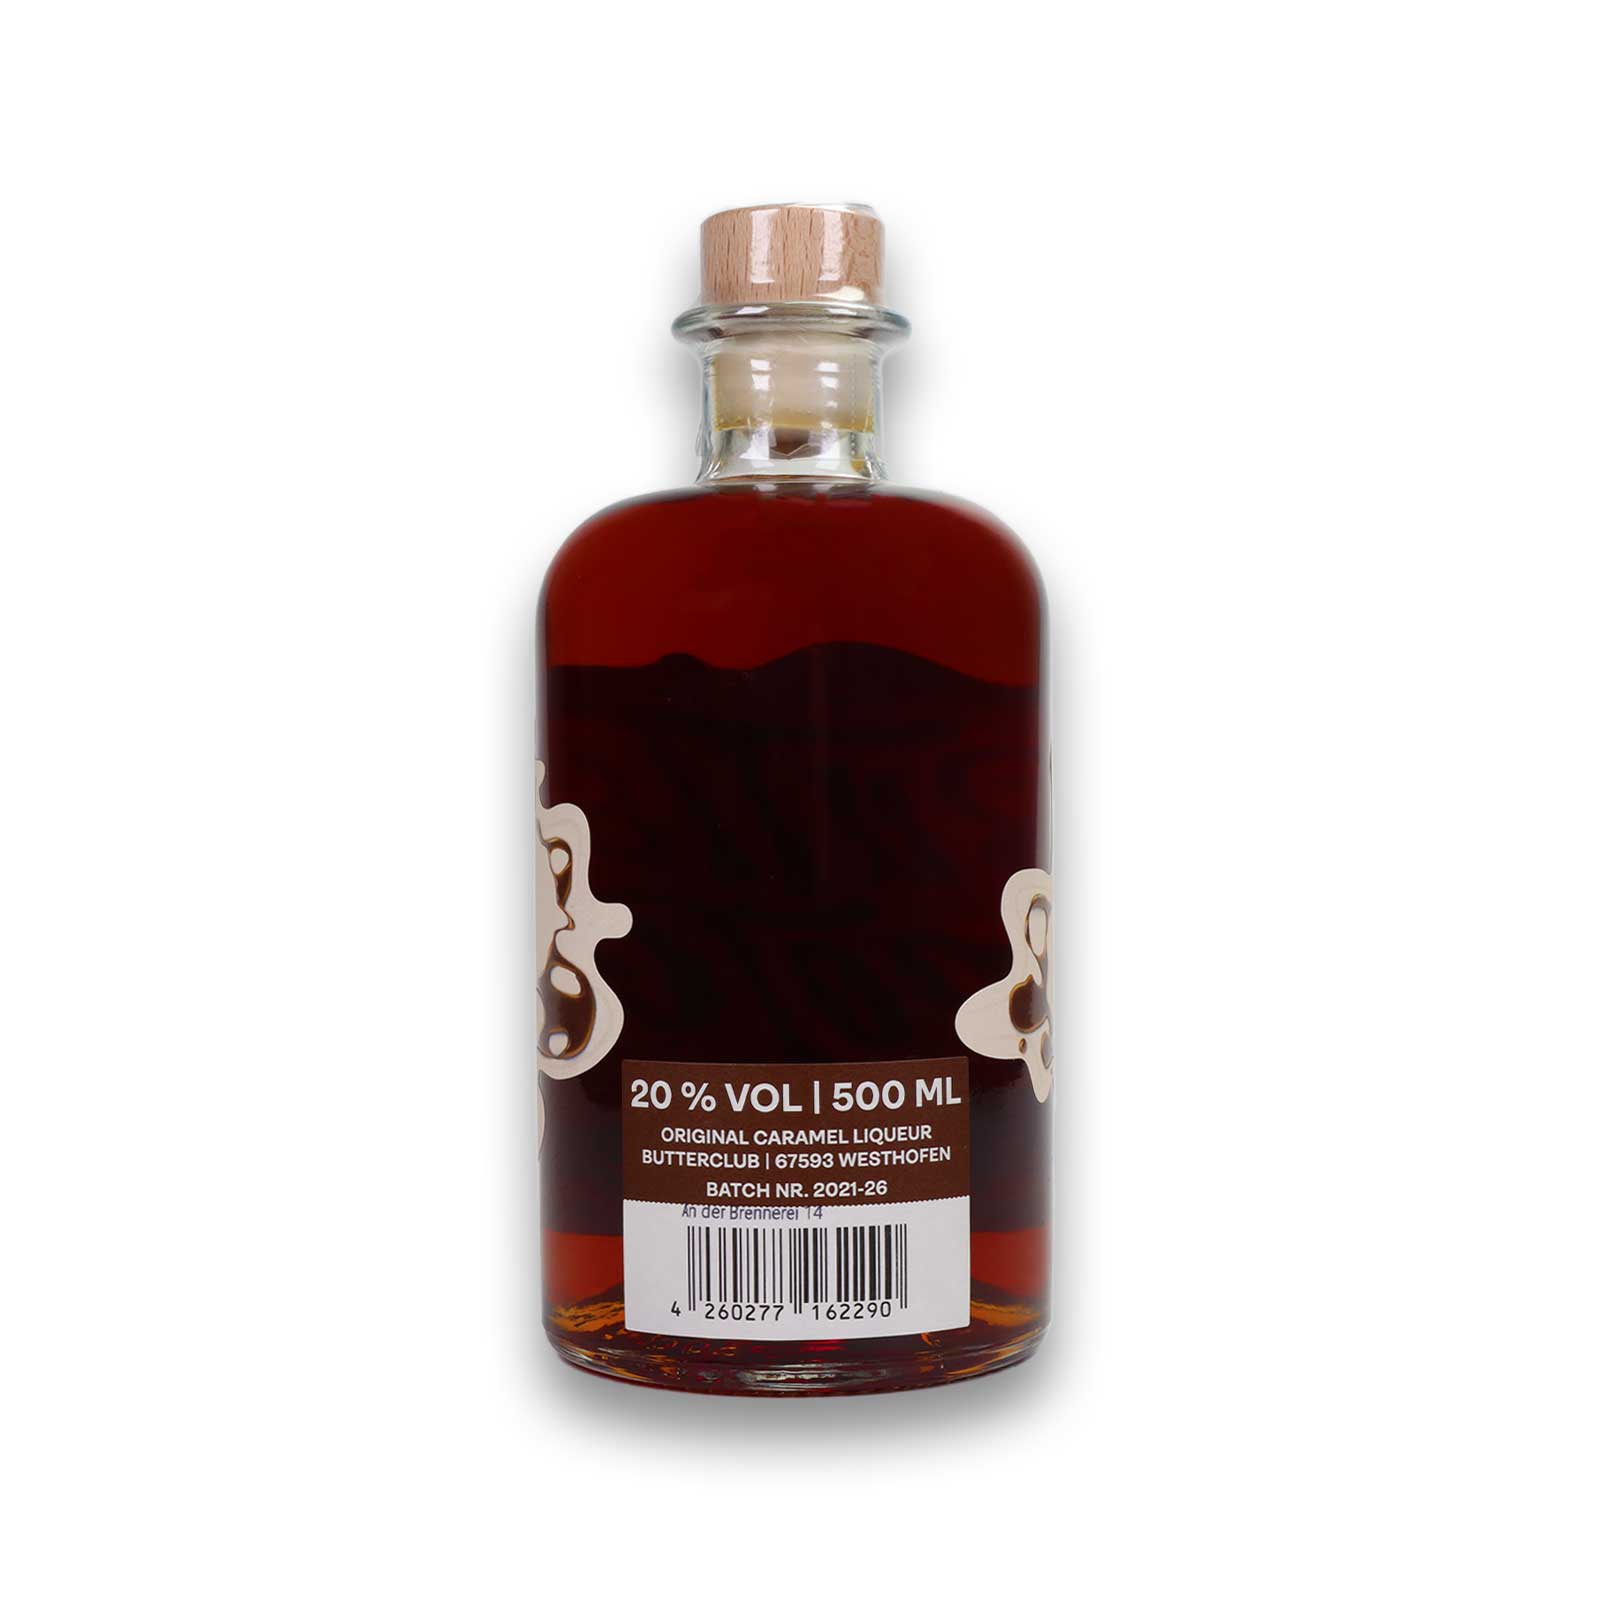 Etikett auf der 500ml Butterscotch Flasche mit Angabe über den Alkoholgehalt.